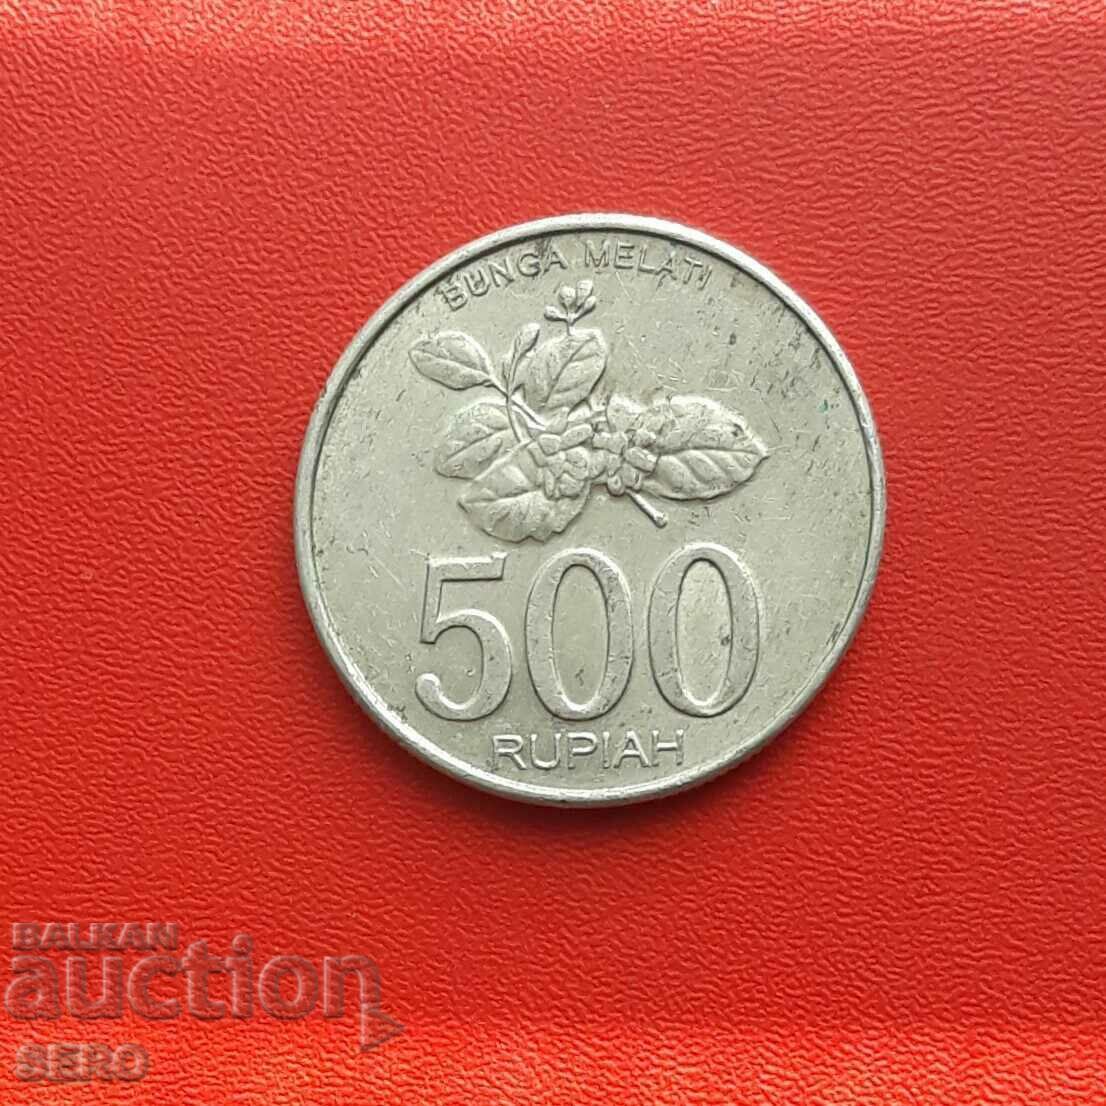 Ινδονησία-500 ρουπίες 2003